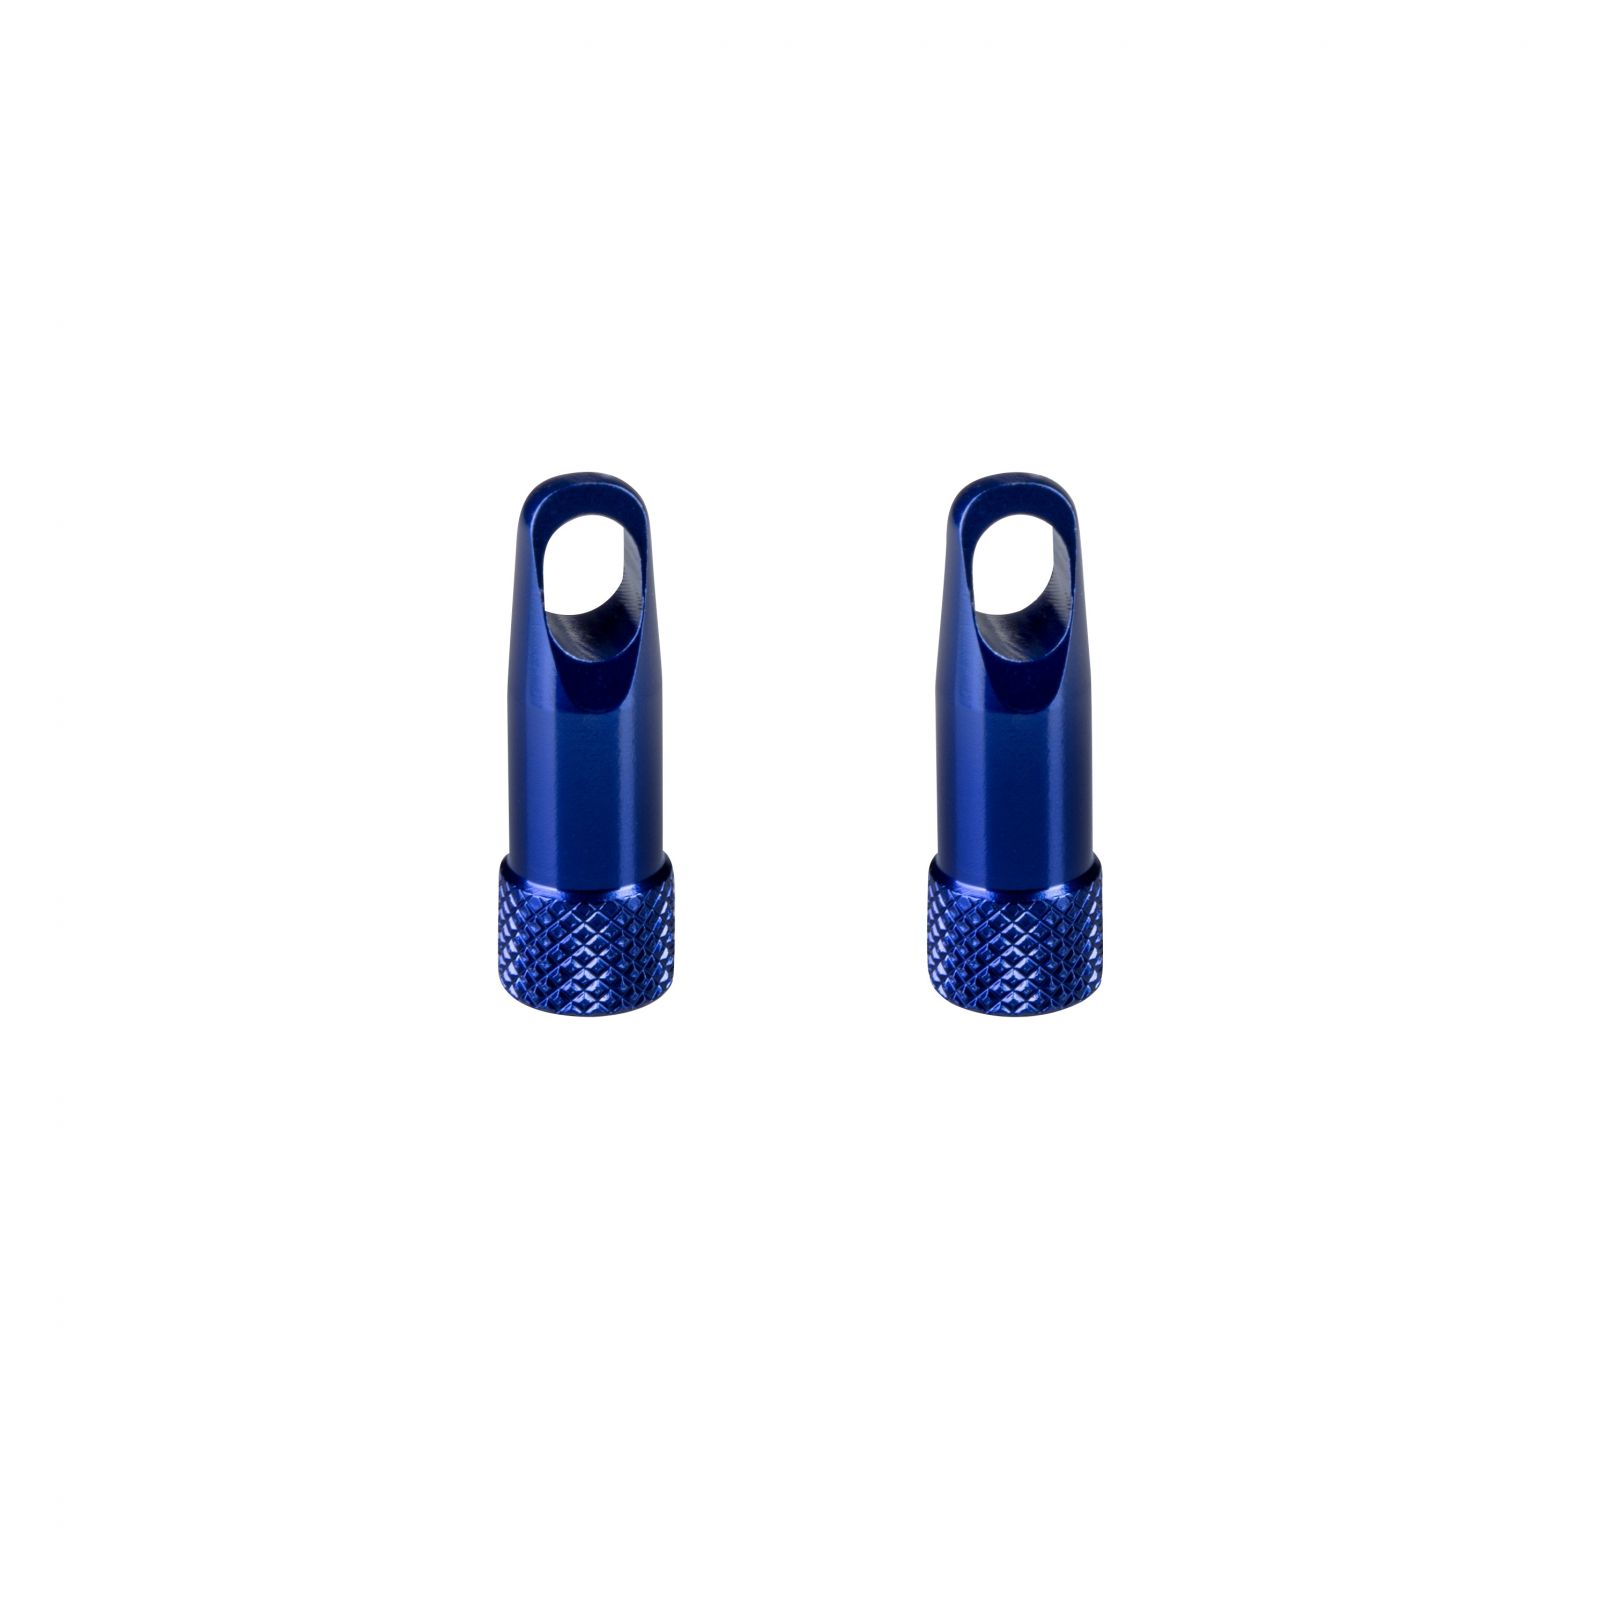 čepičky galuskového ventilku s klíčem,hliník,modré TK 91